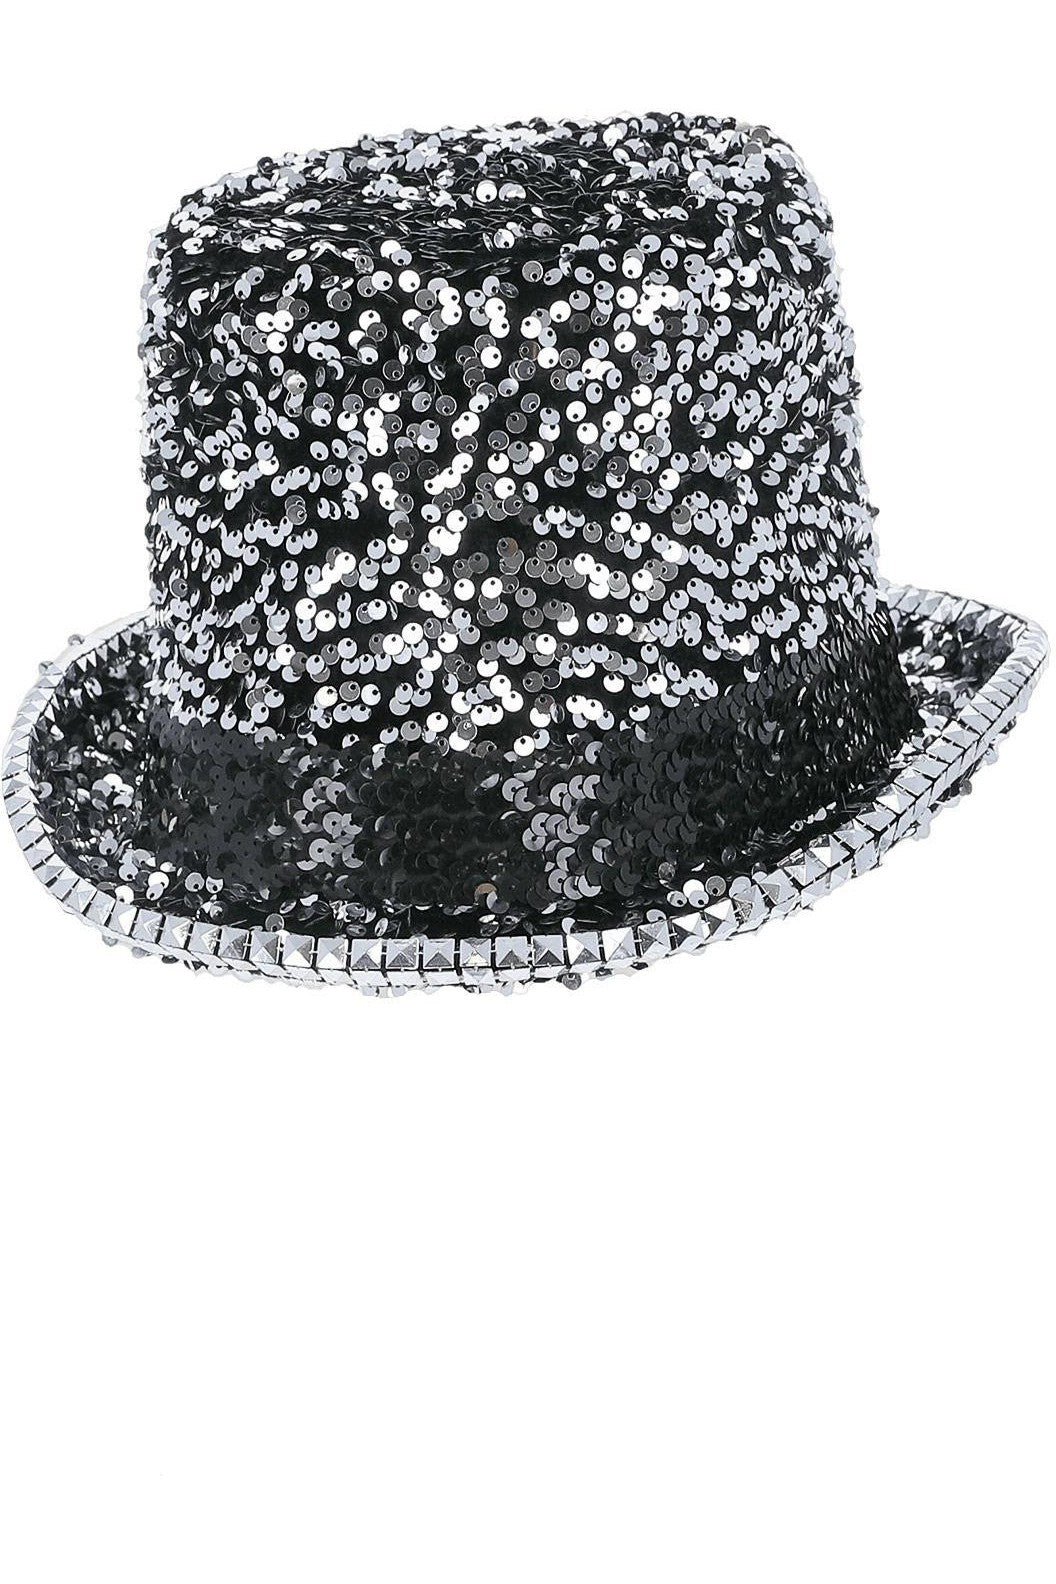 Fever Deluxe Felt Sequin Top Hat